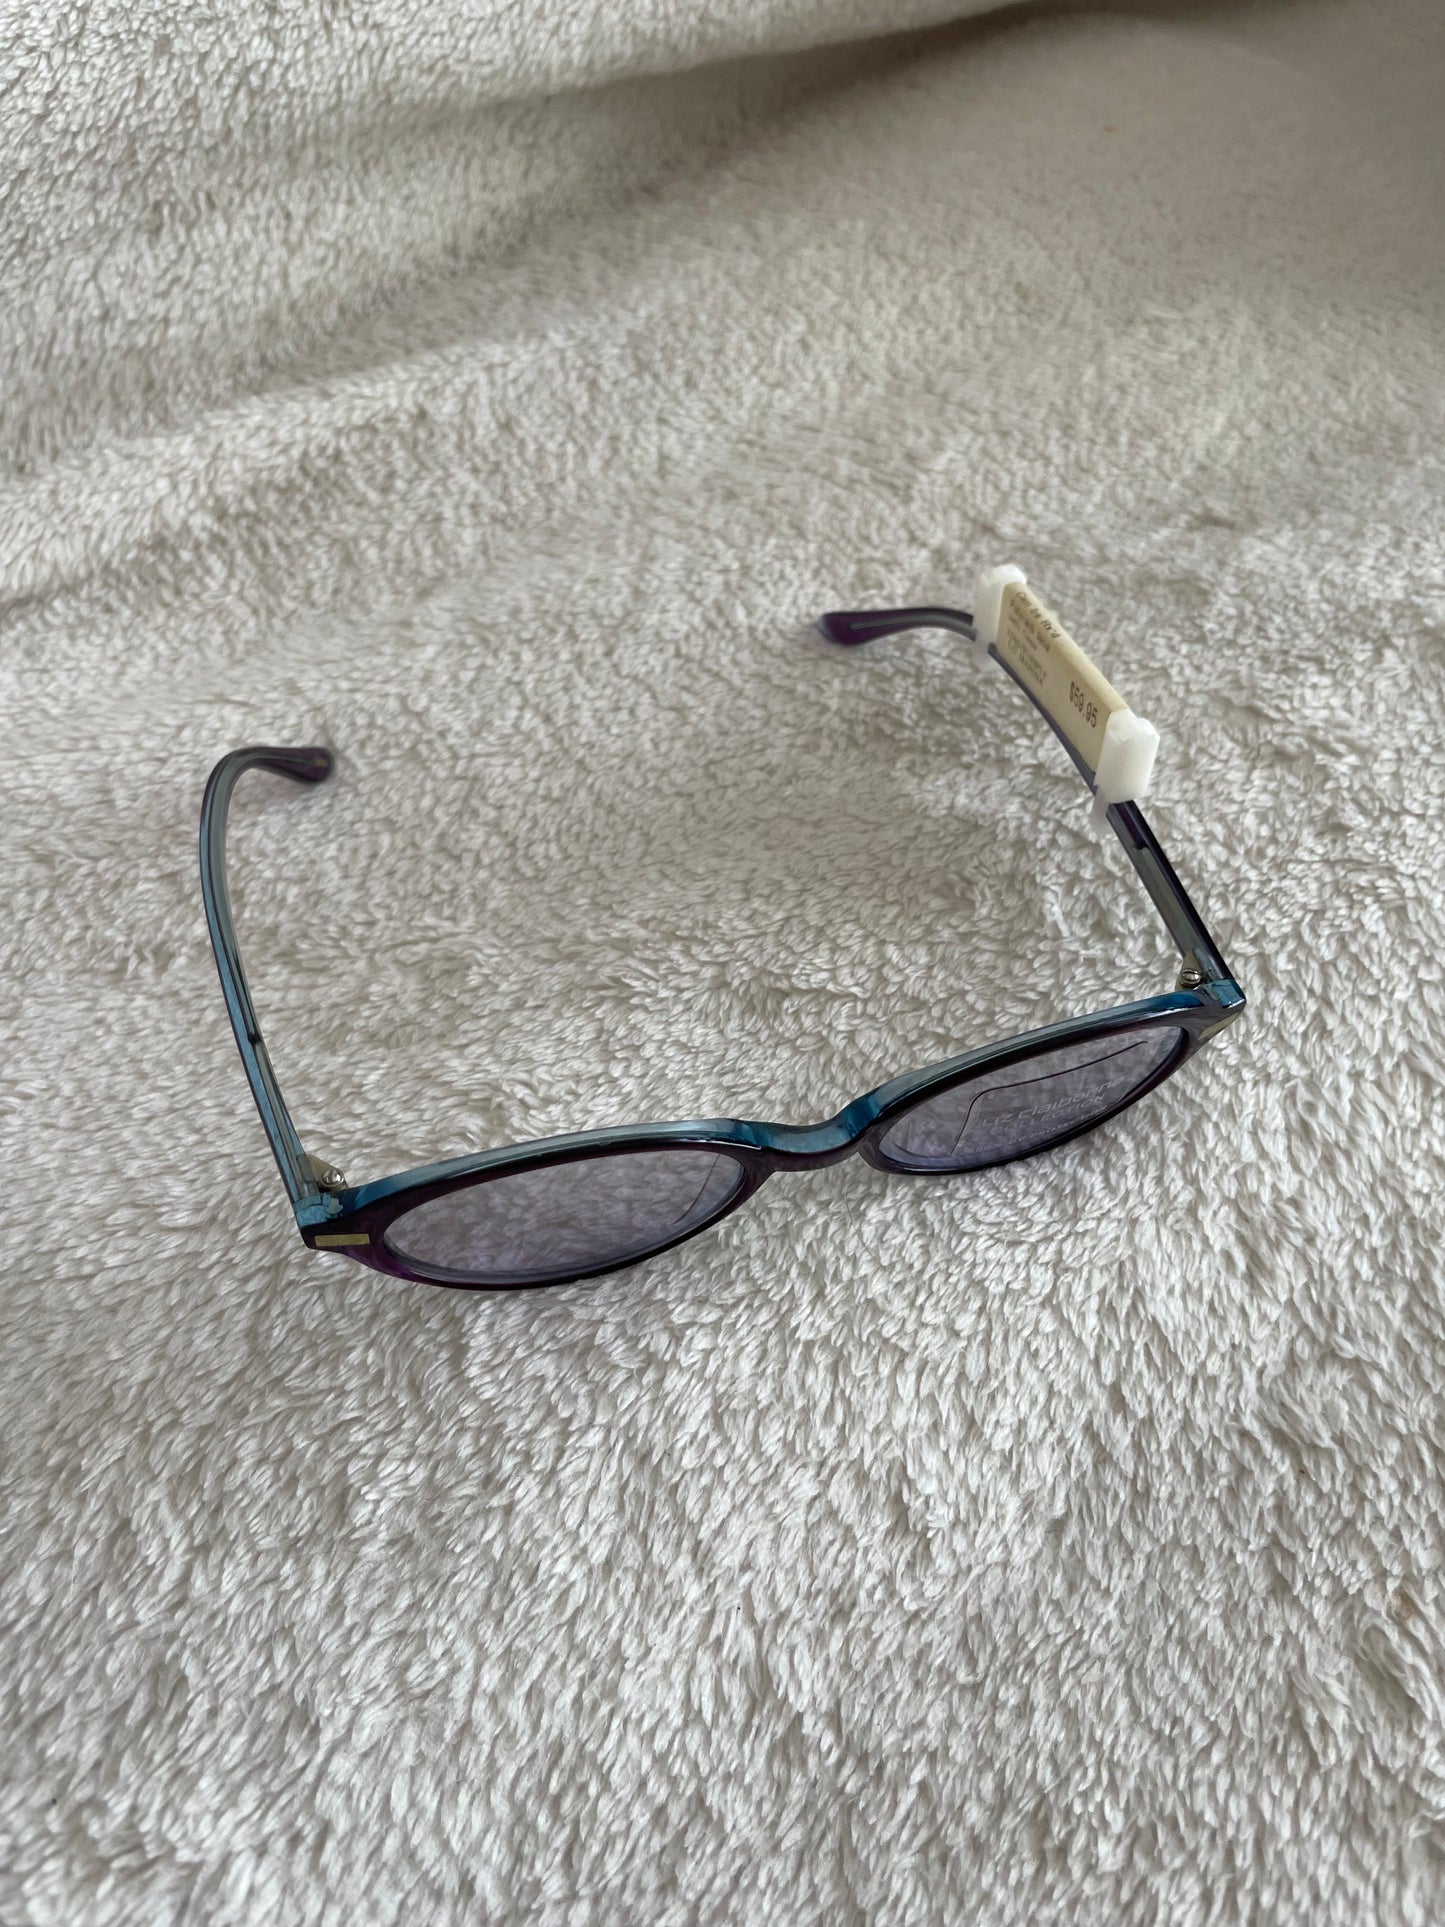 Purple & blue 90s Liz Claiborne glasses